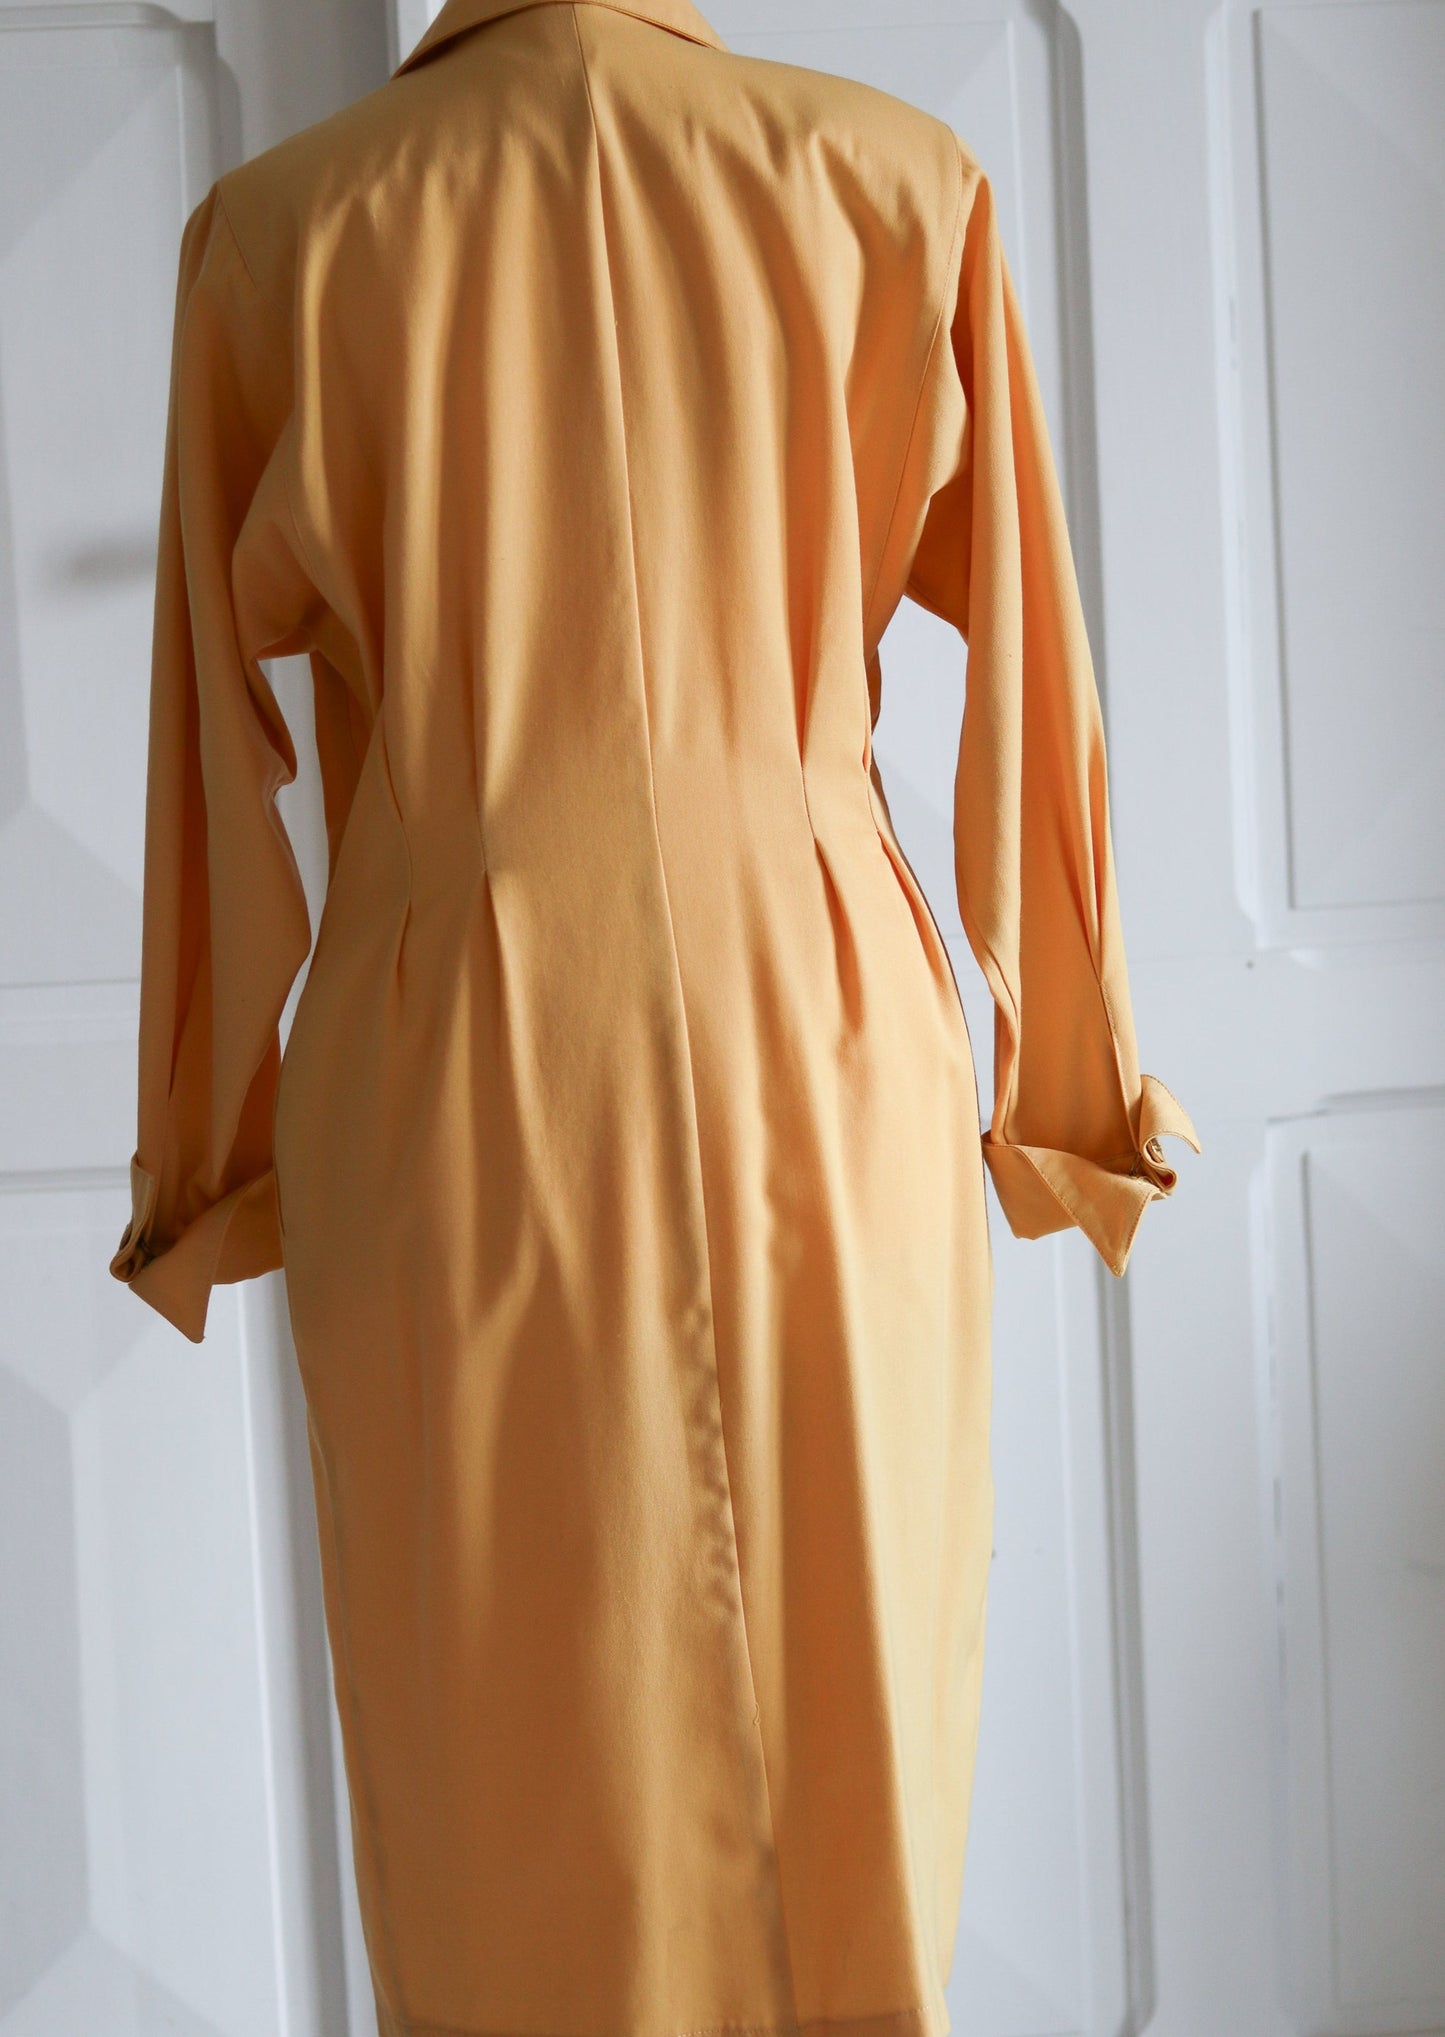 AMANDINE robe 1980